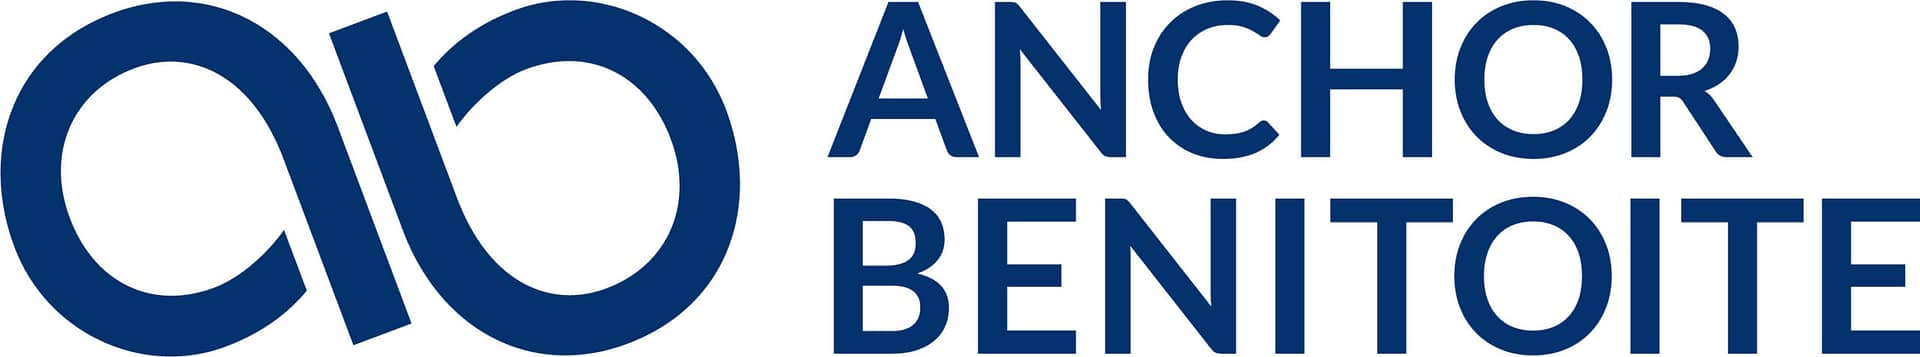 Anchor Benitoite logo